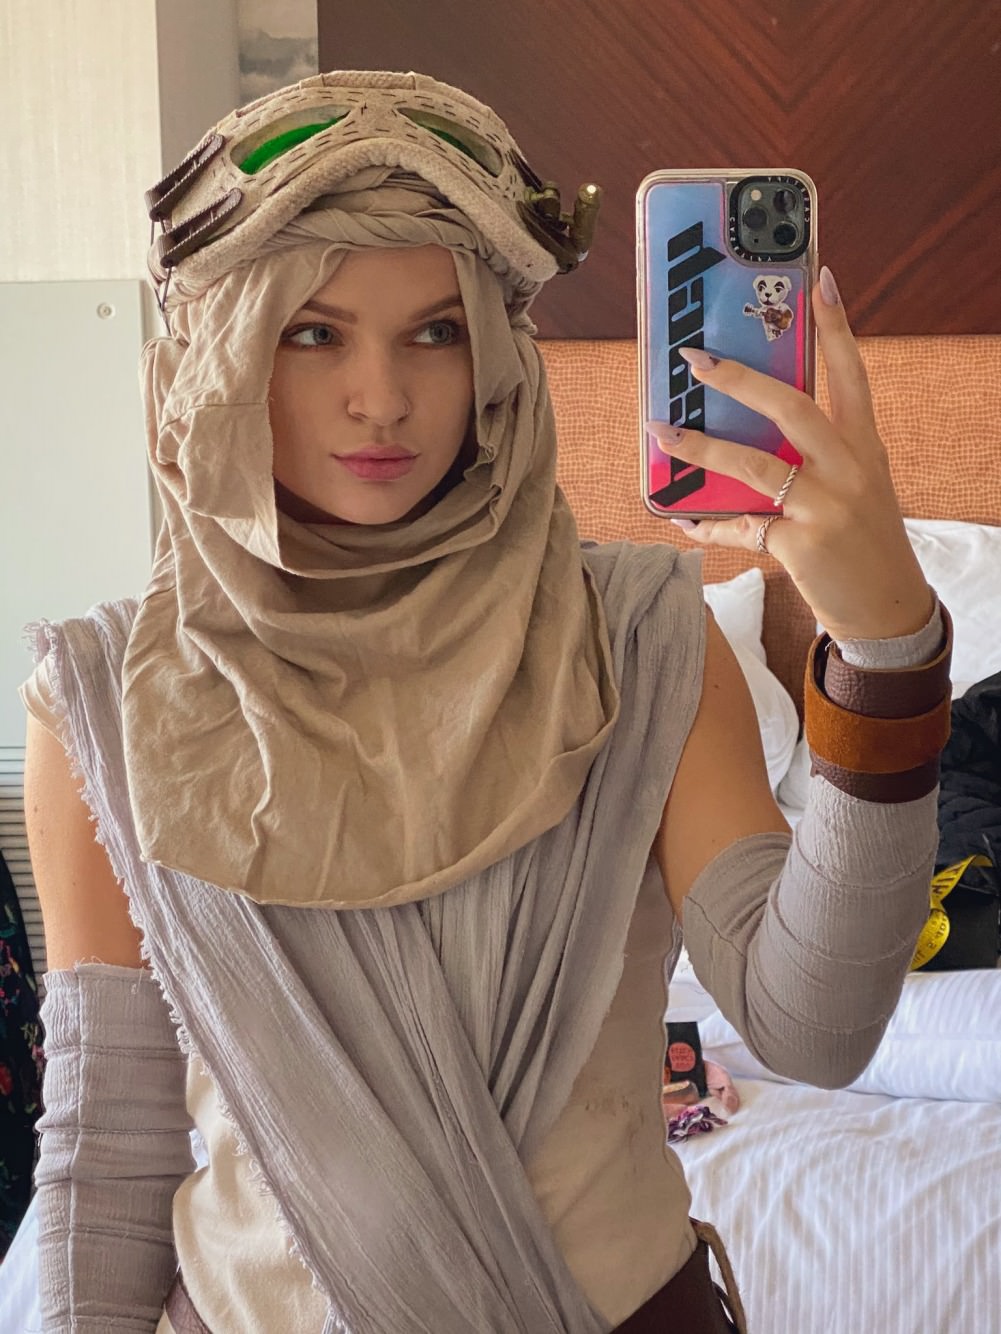  PeachJars as Rey from Star Wars